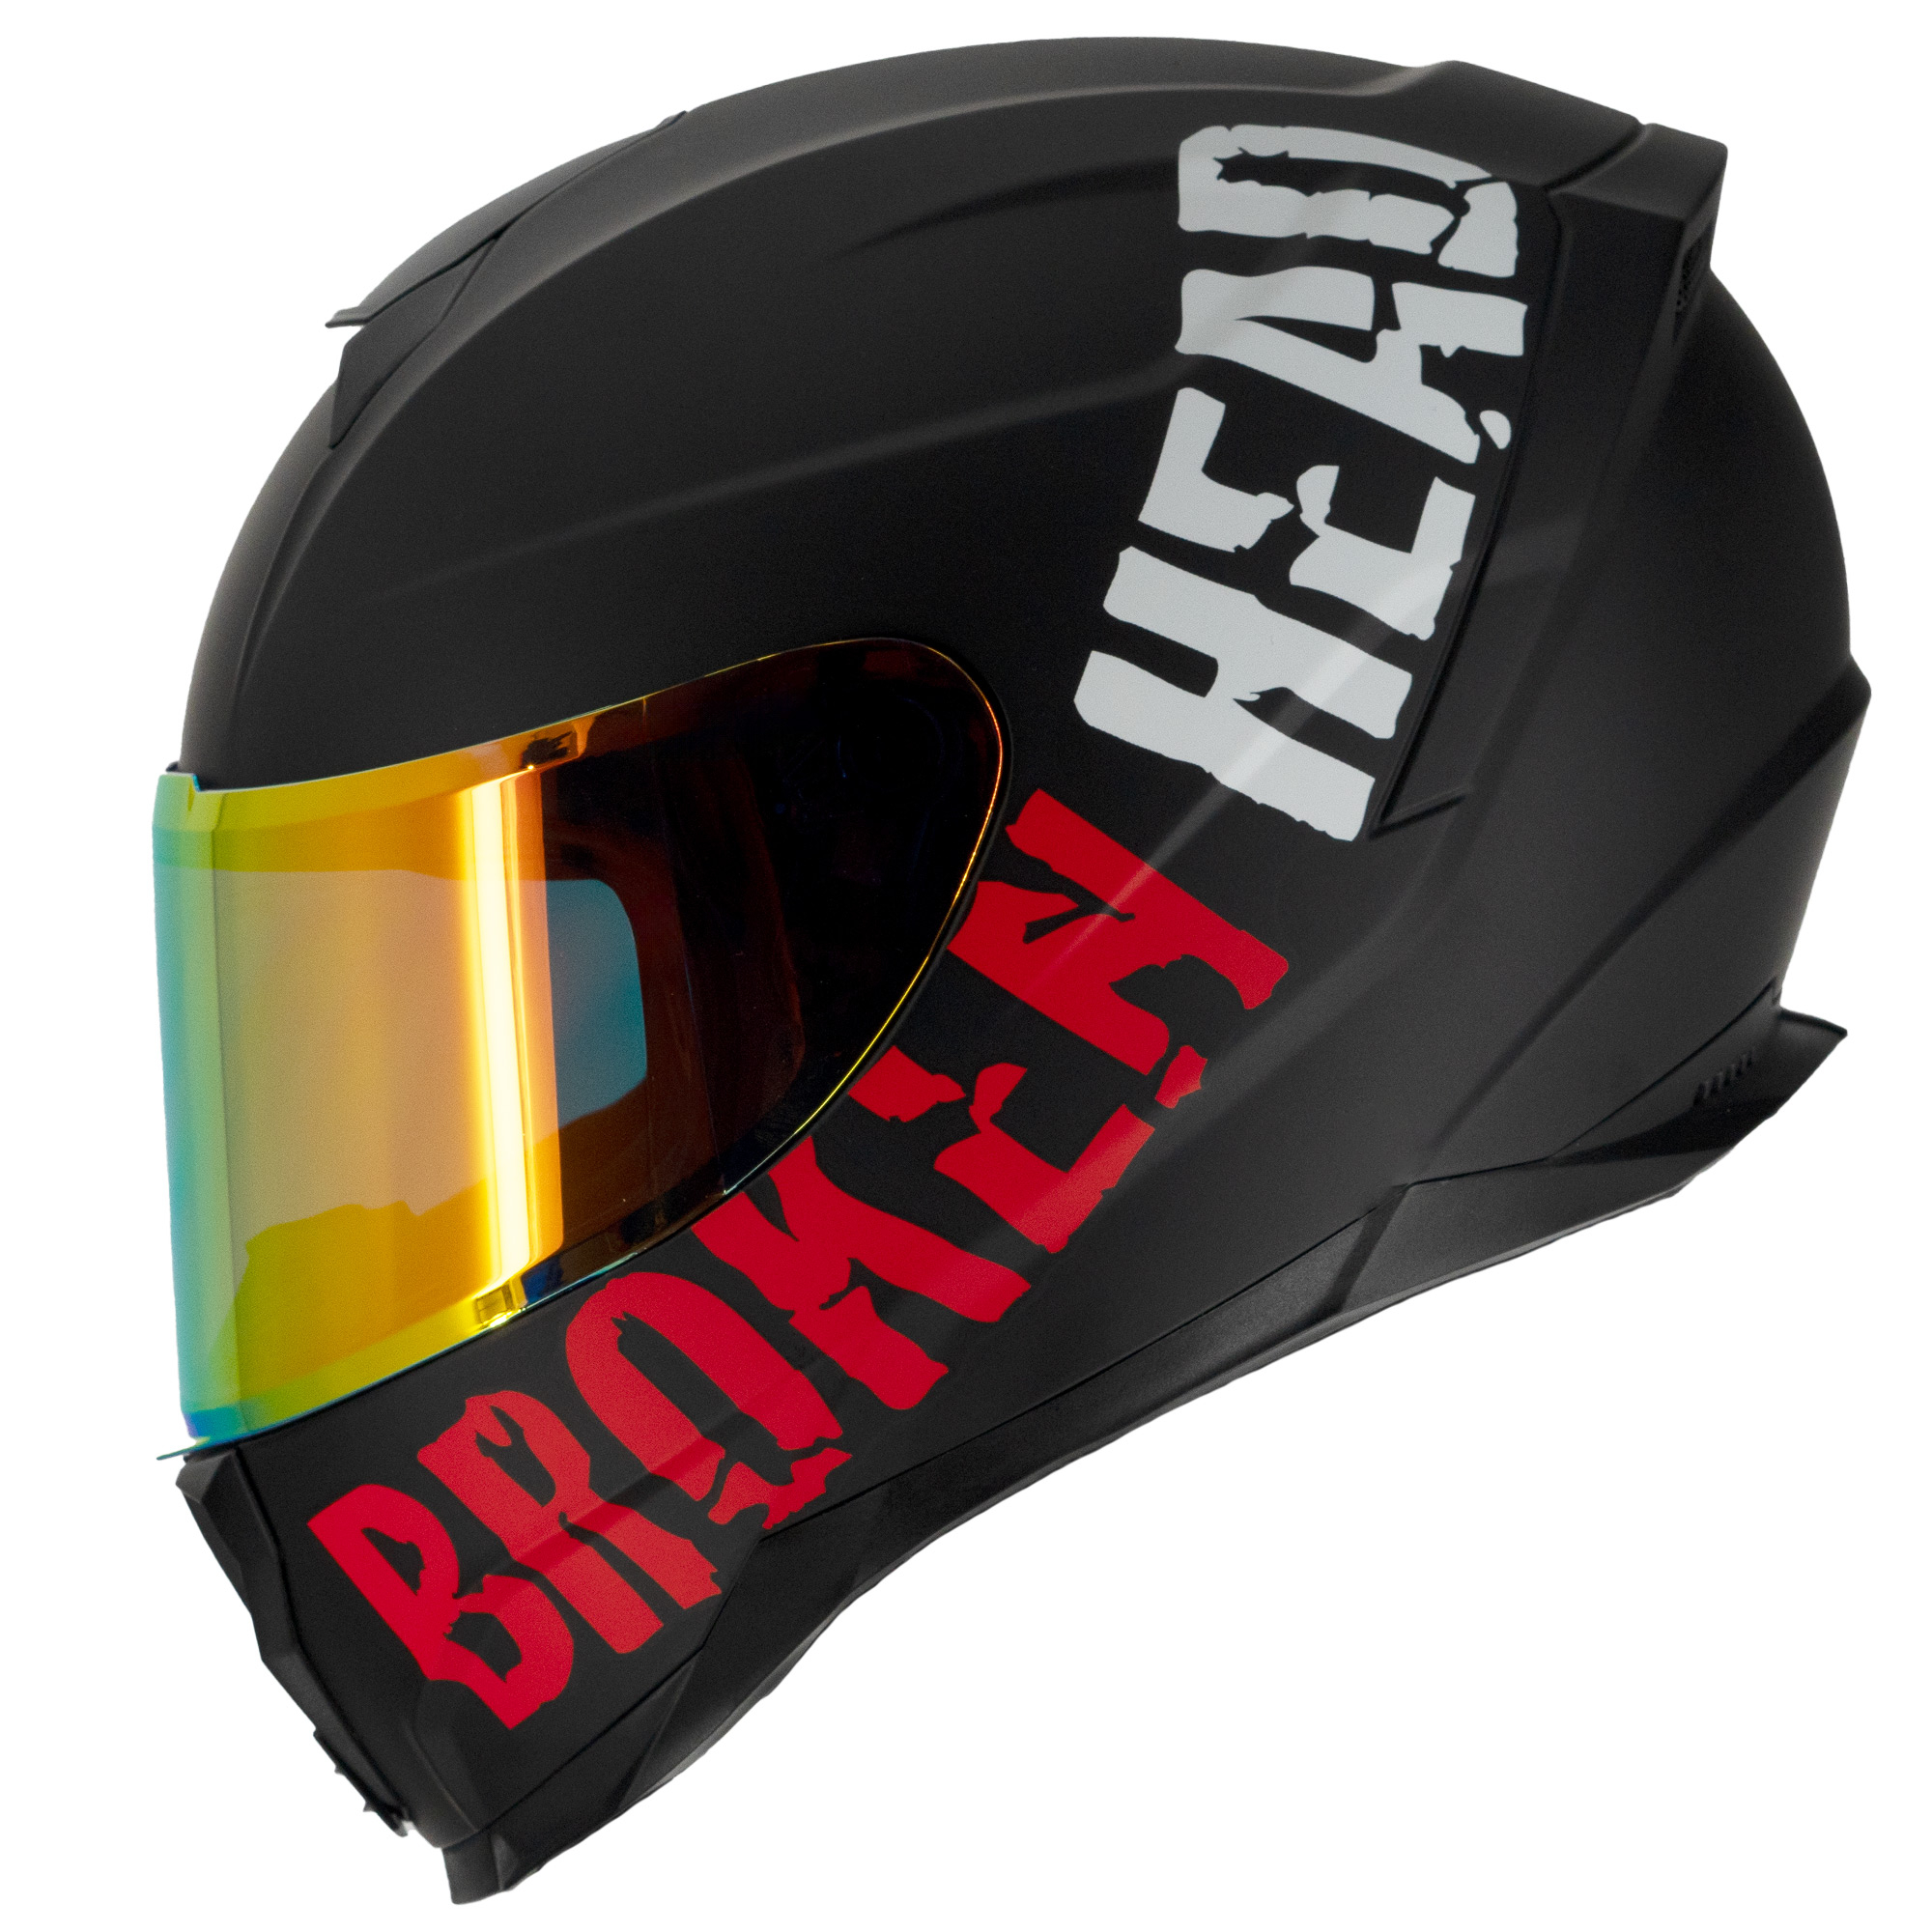 Radfahrer durchschlägt in Mertingen mit Kopf Windschutzscheibe: Helm rettet  sein Leben